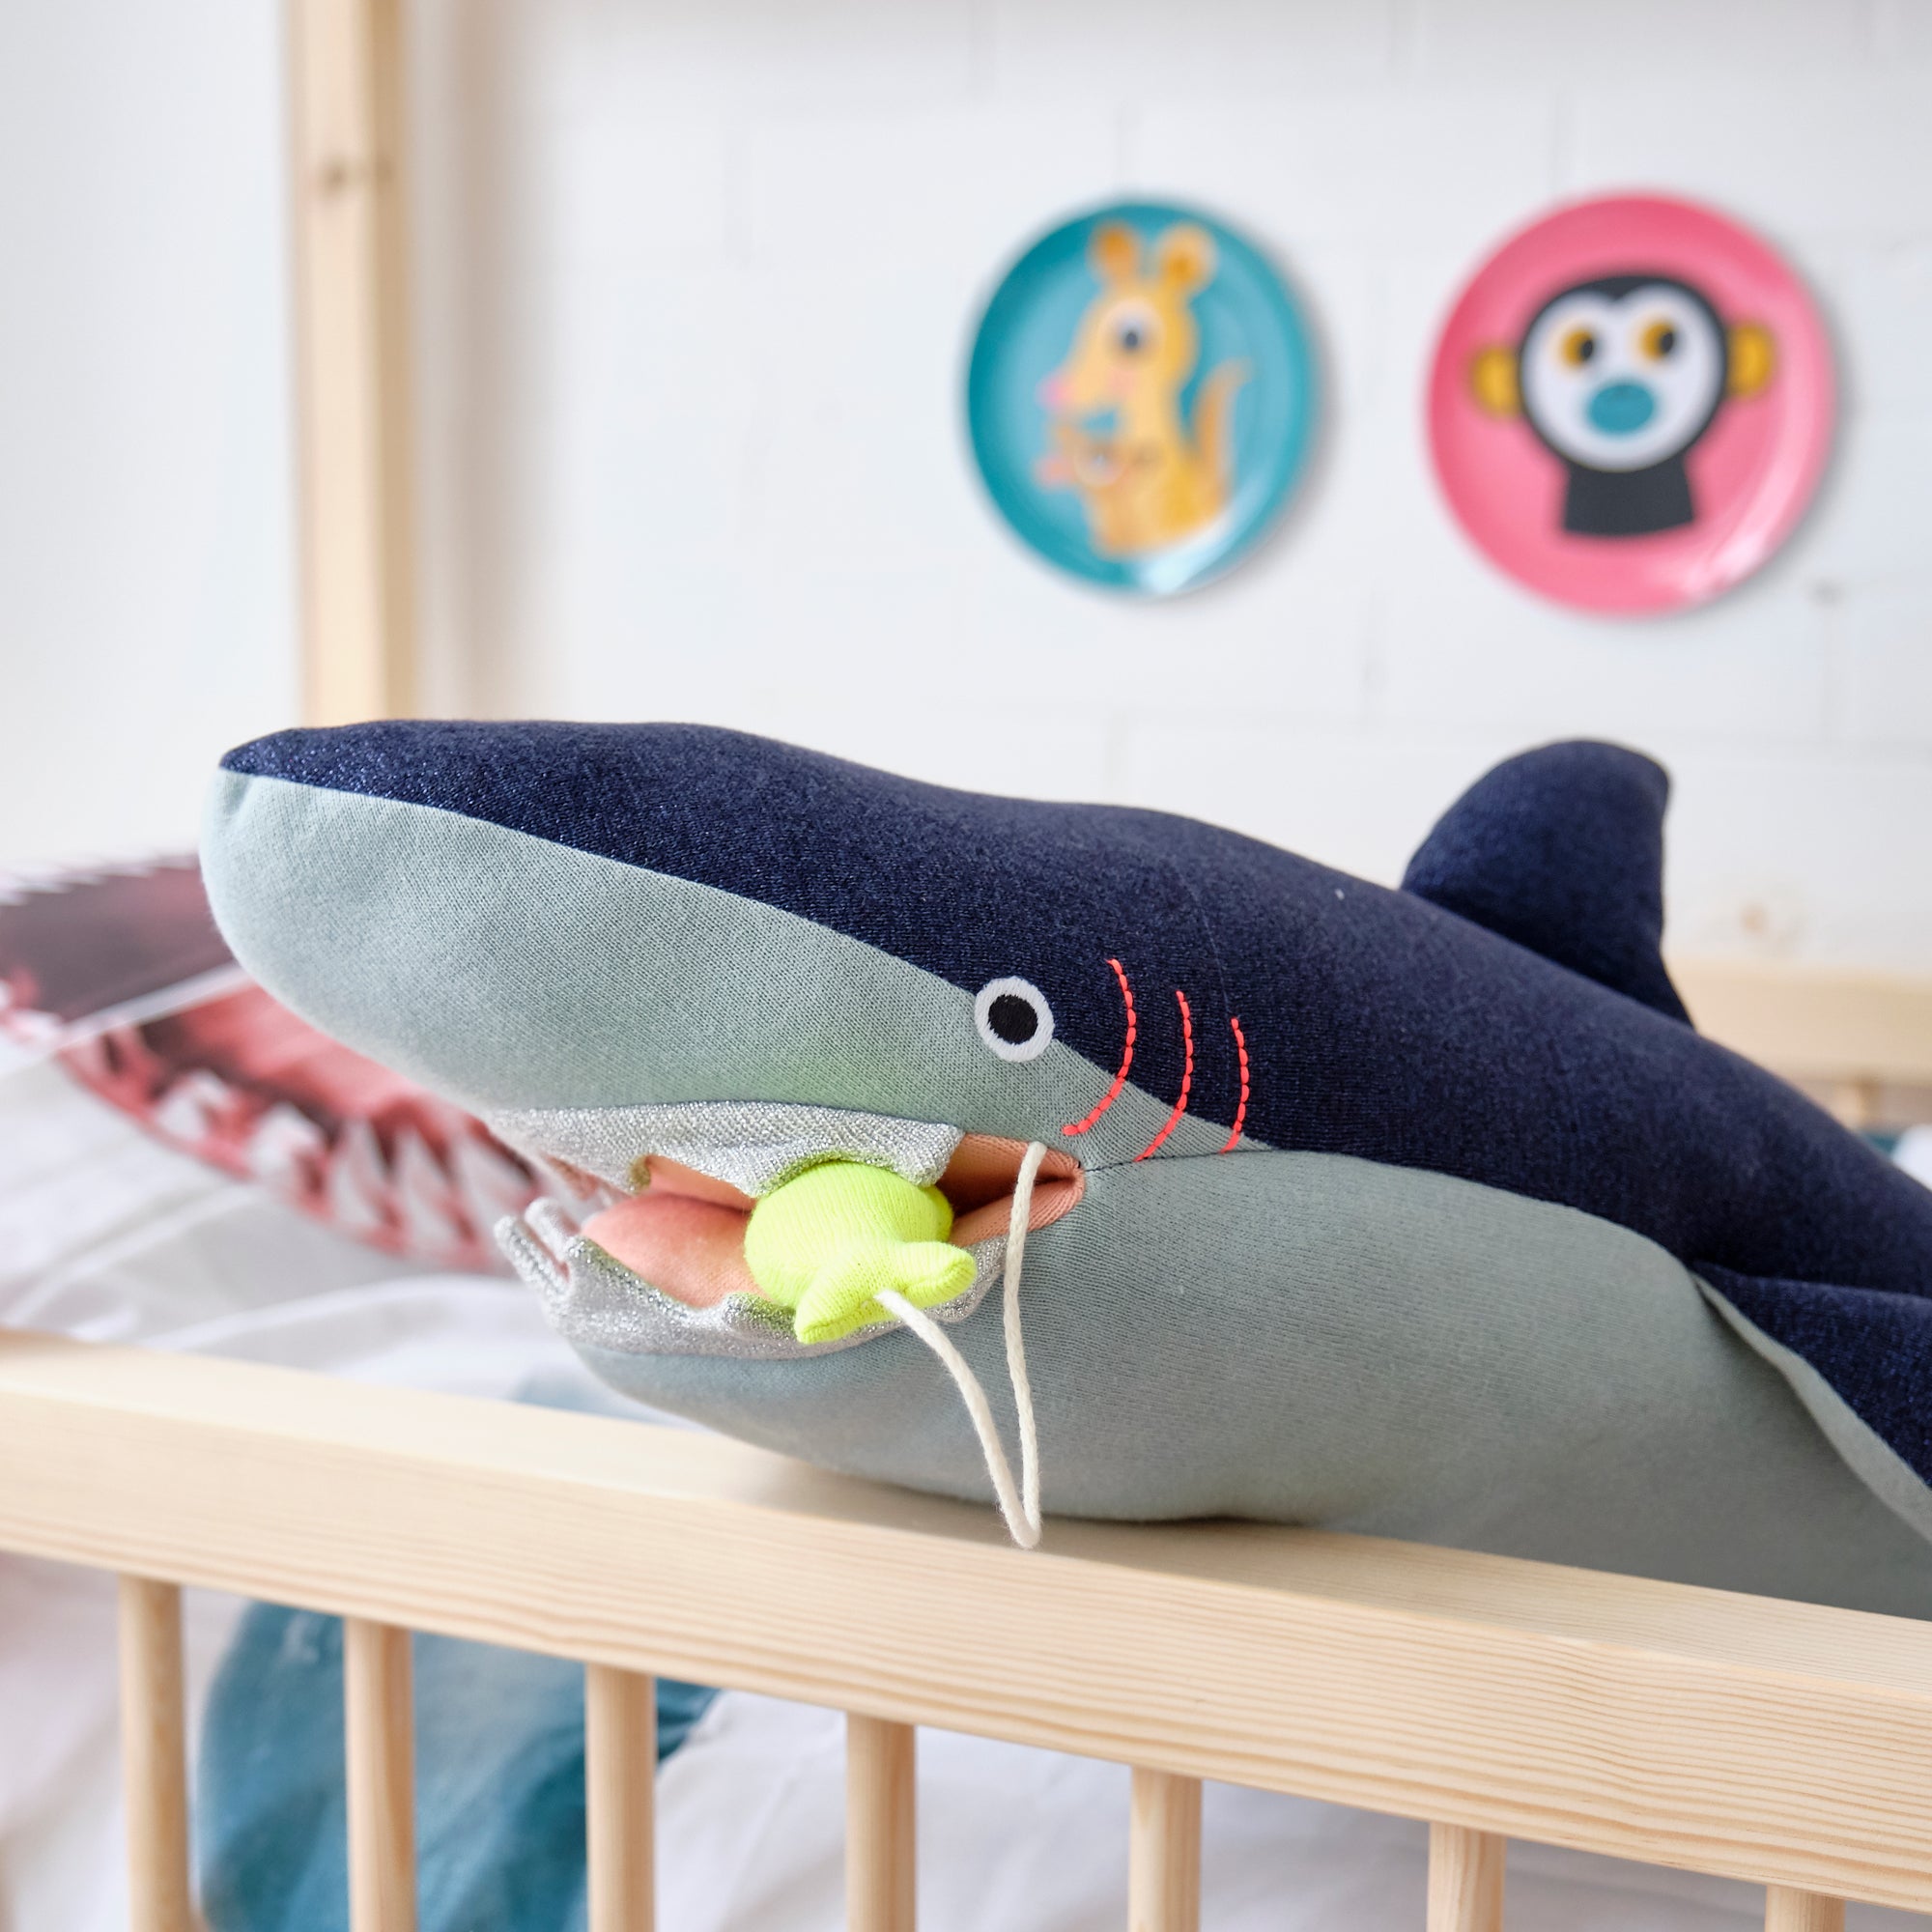 Vinnie Shark Soft Toy by Meri Meri, styled by Bobby Rabbit.